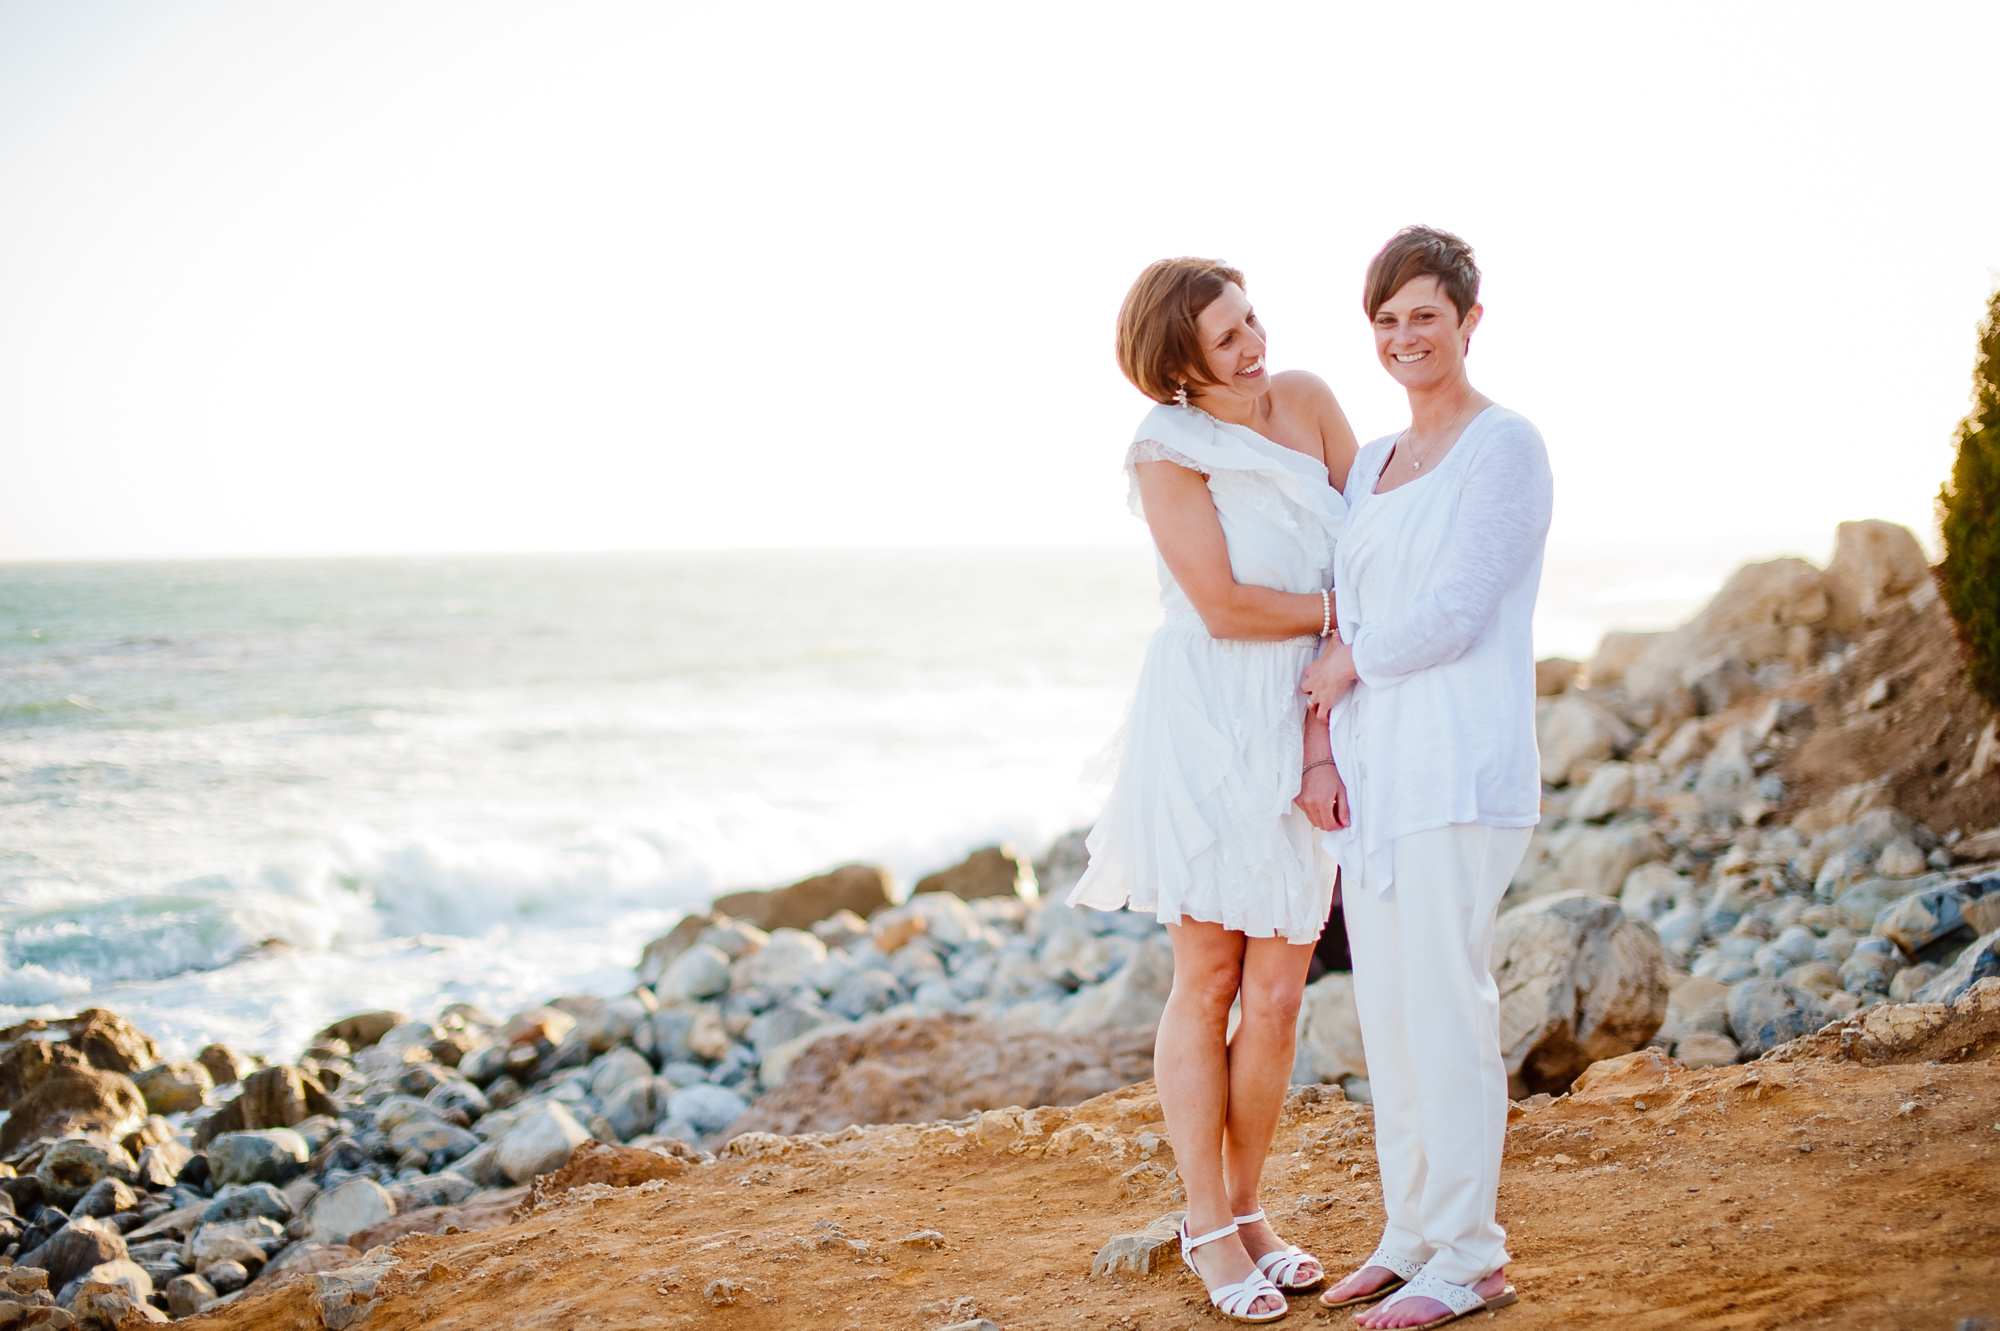 Katie & Krysten’s Palos Verdes Wedding featured slider image